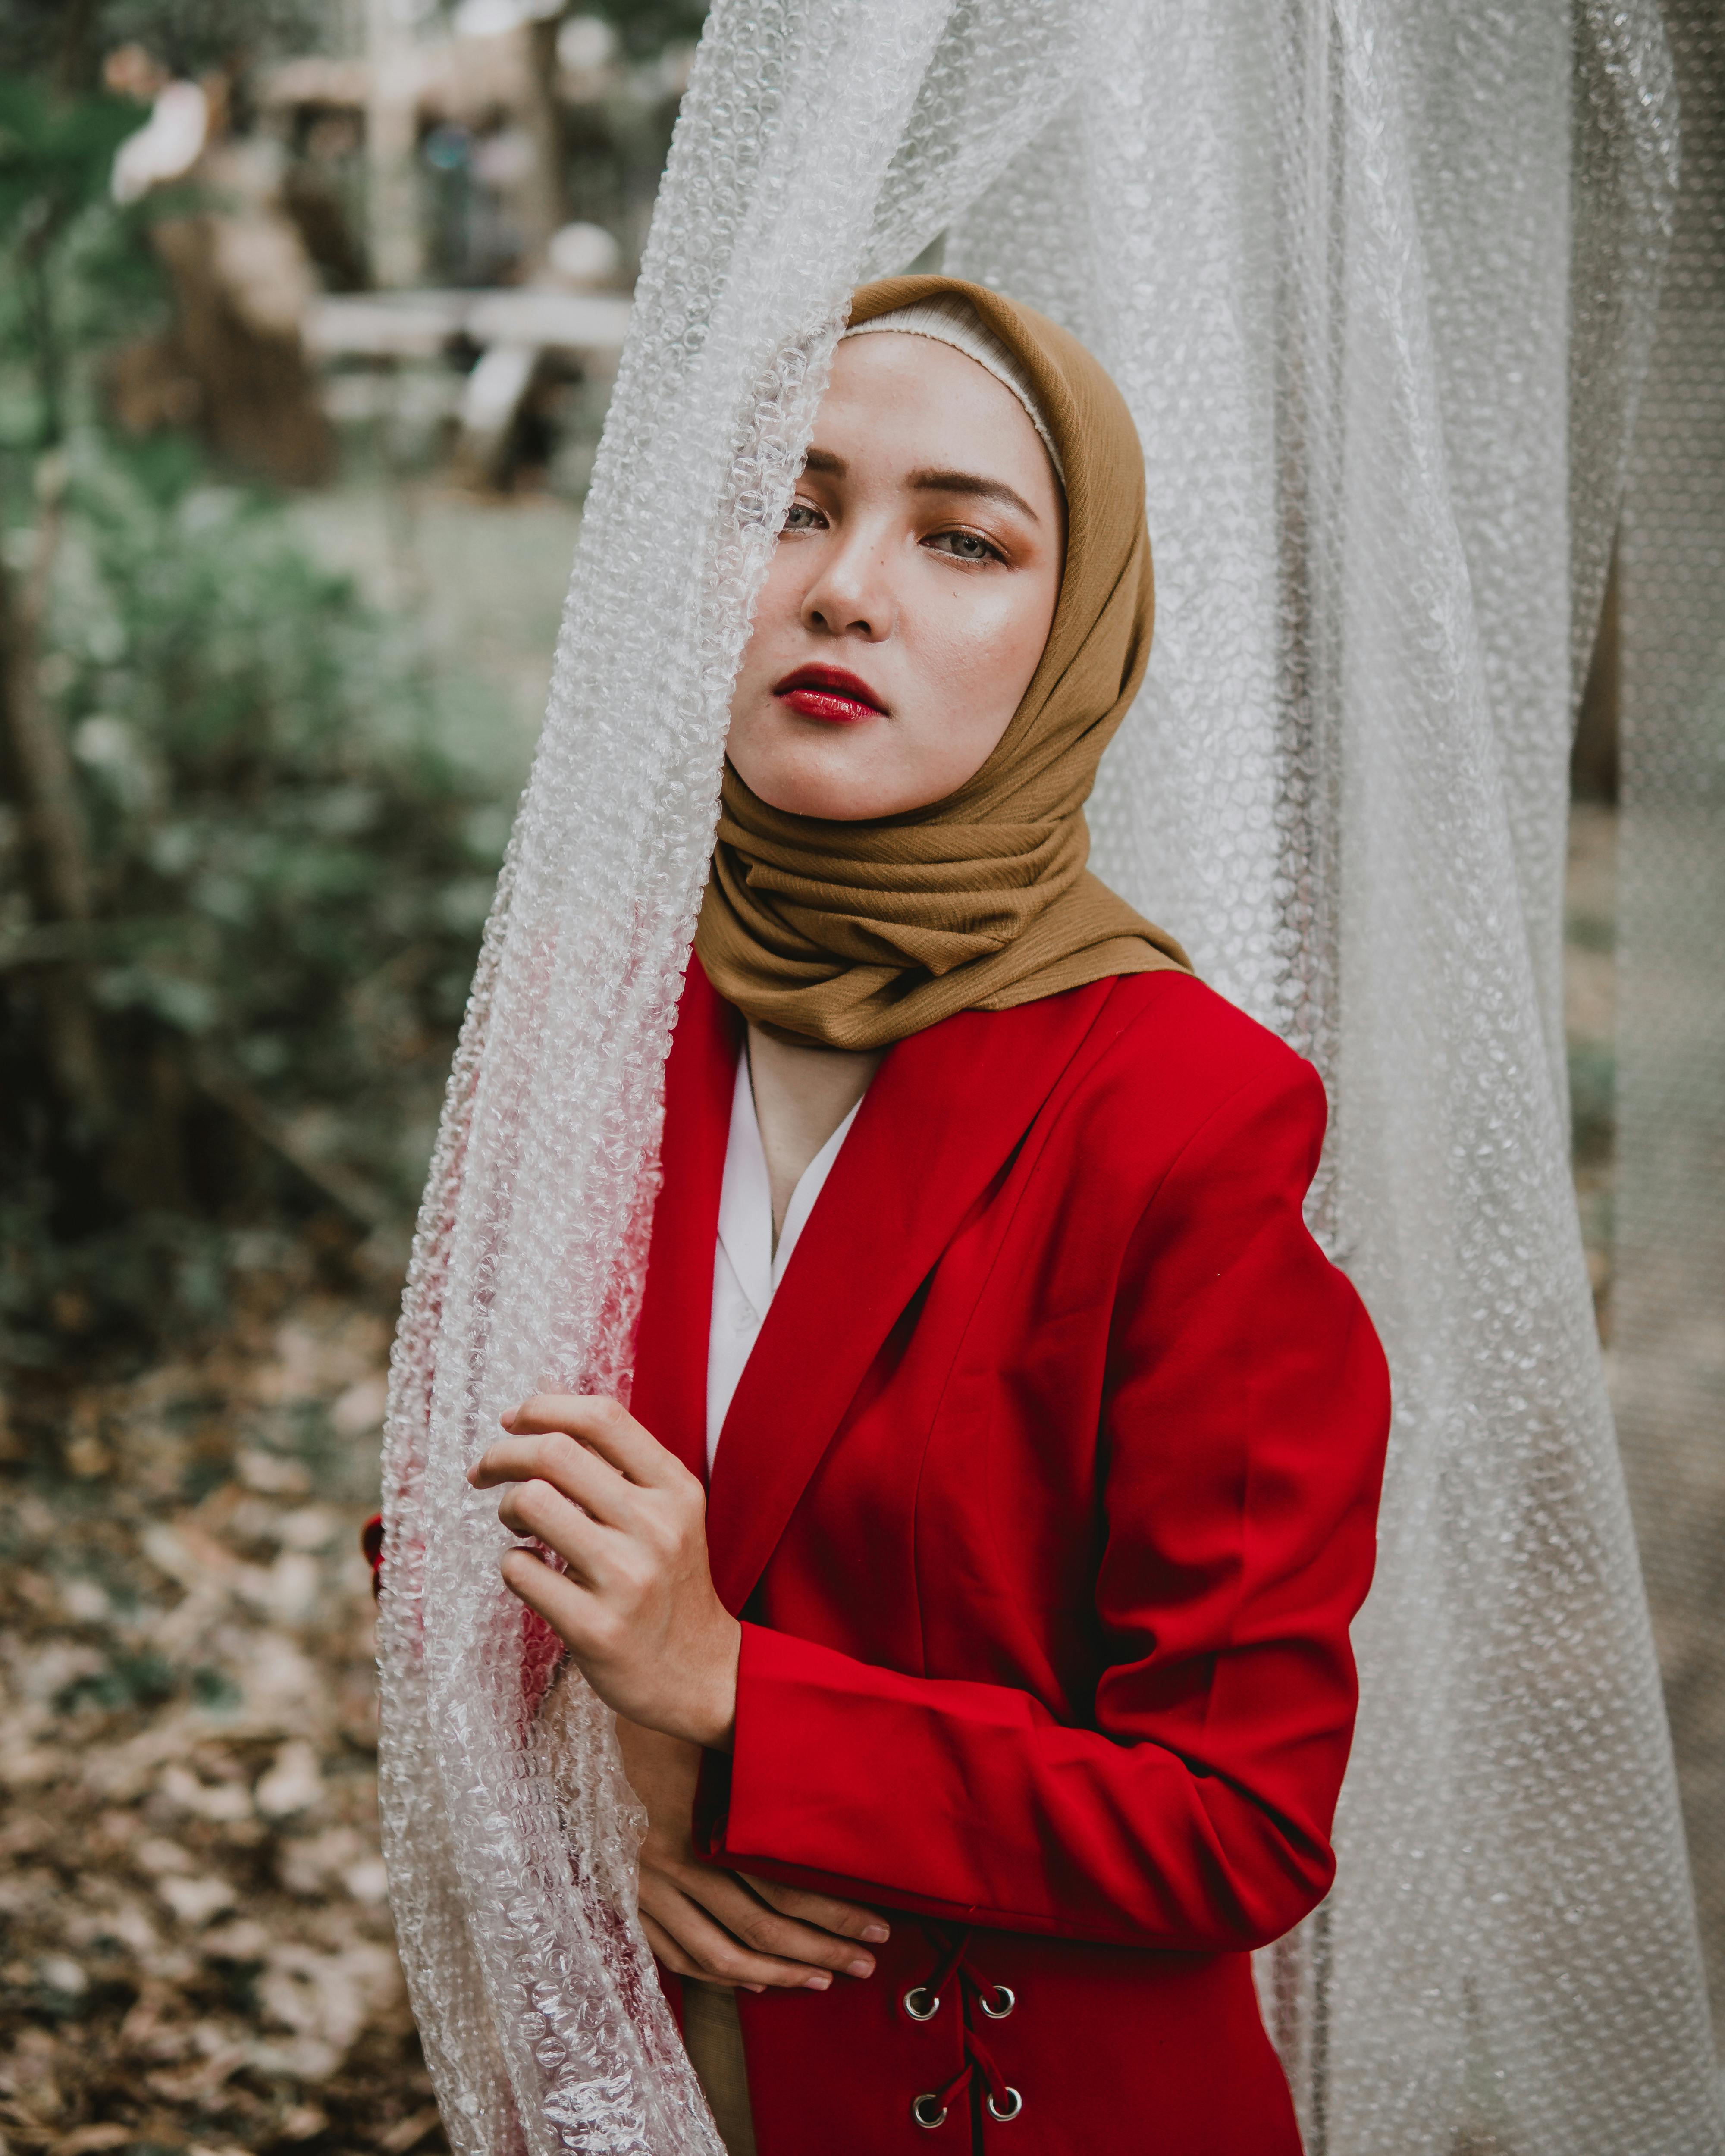 Woman Wearing Brown Hijab   Free Stock Photo 